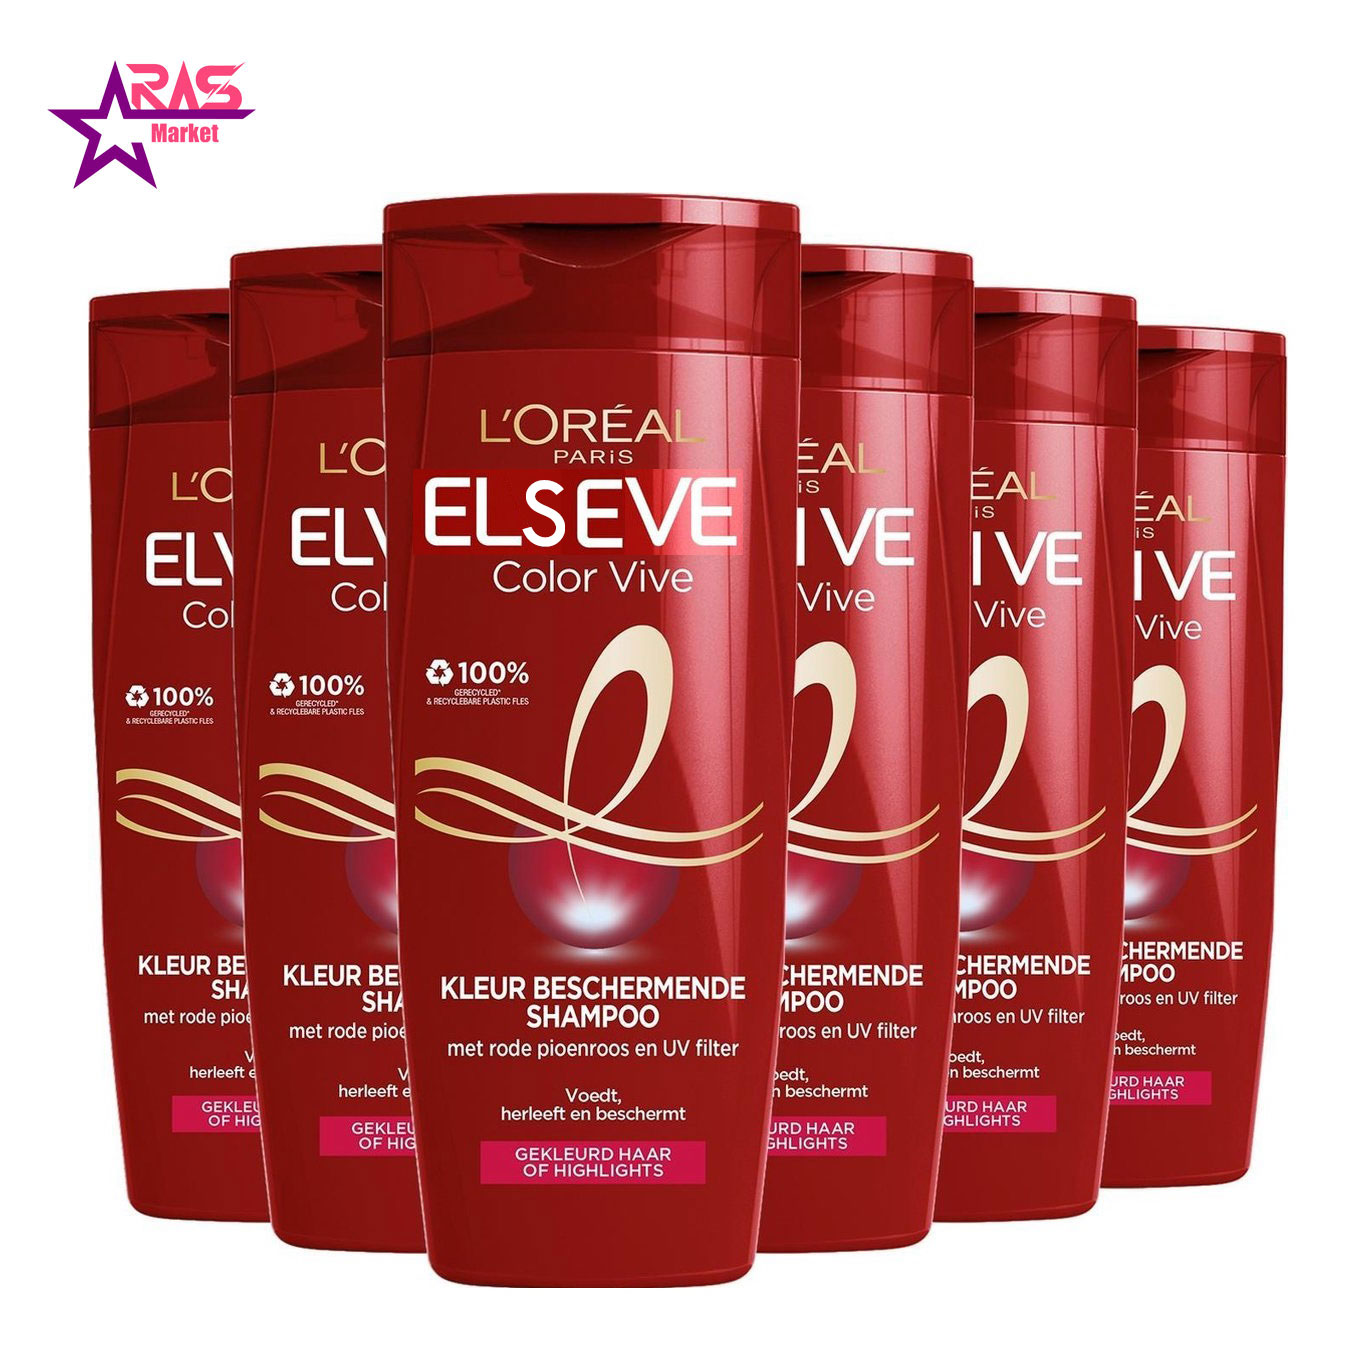 شامپو لورآل سری ELSEVE مدل Color Vive مخصوص موهای رنگ شده ۴۵۰ میلی لیتر ، فروشگاه اینترنتی ارس مارکت ، استحمام 1